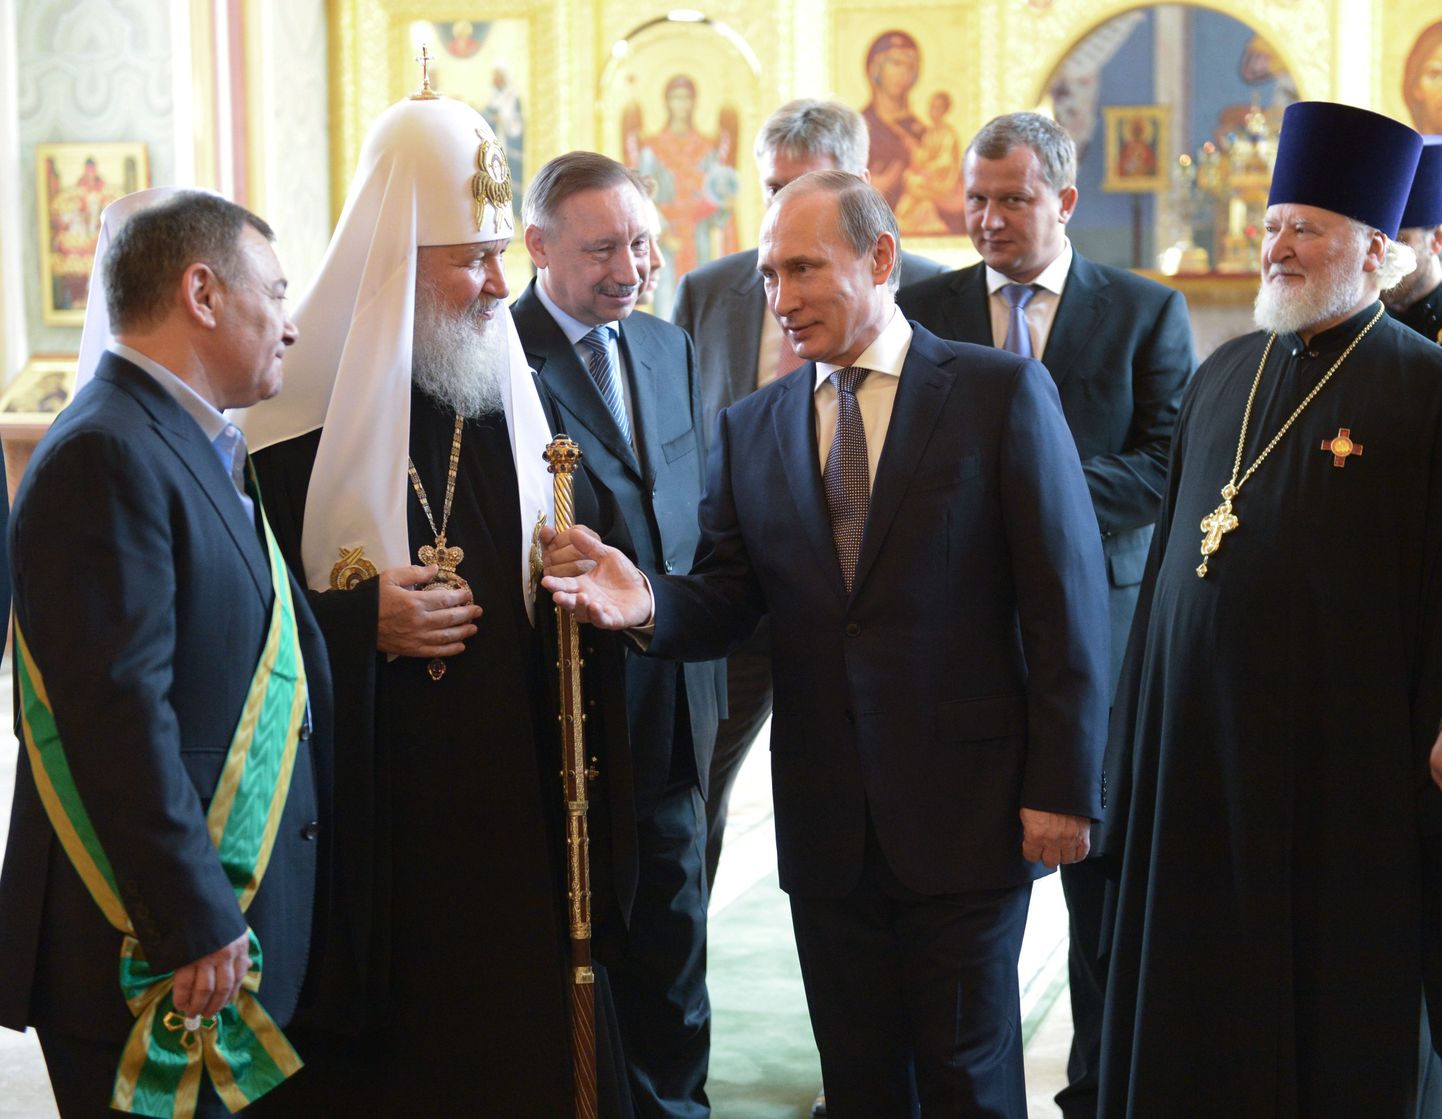 Venemaa president Vladimir Putin külastamas Moskva Püha Vladimiri kirikut. Vasakult esimene Arkadi Rotenberg, üks presidendi sõpradest miljardärvendadest.